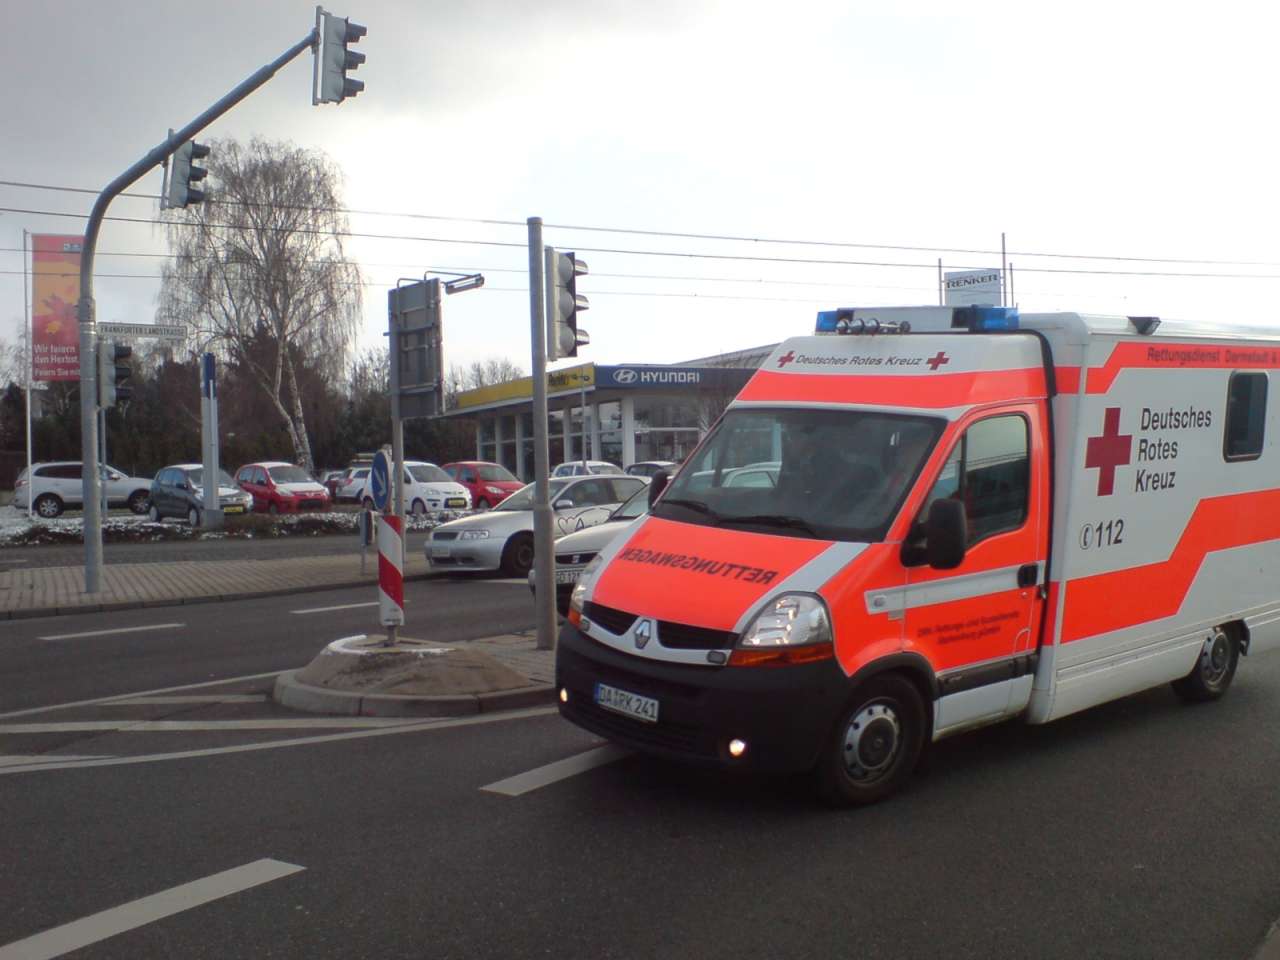 Almaniyada TERROR: 1 ölü, 14 yaralı